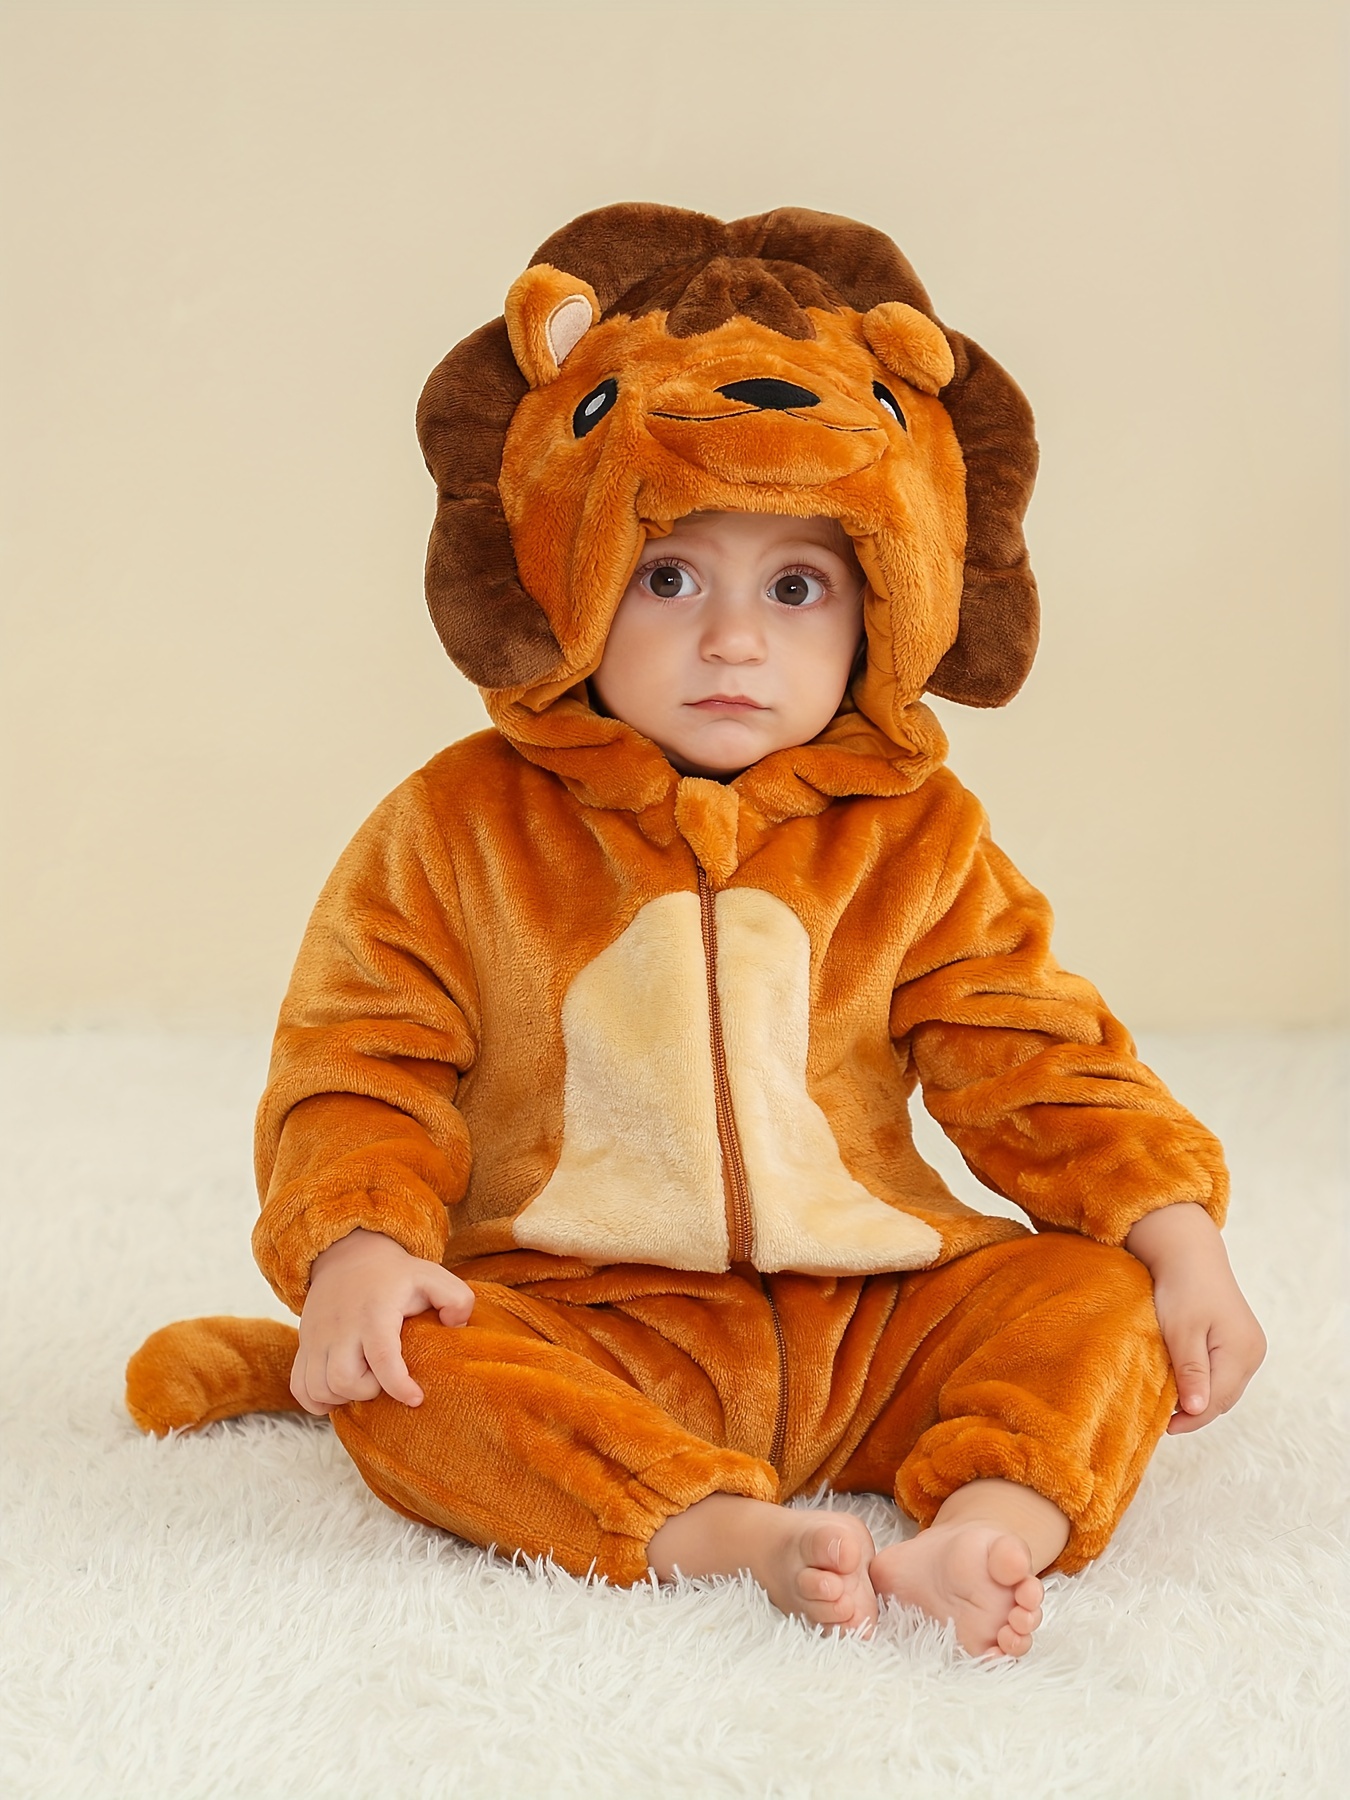 Disfraz de Halloween para bebé, ropa para niño y niña, mono, oso